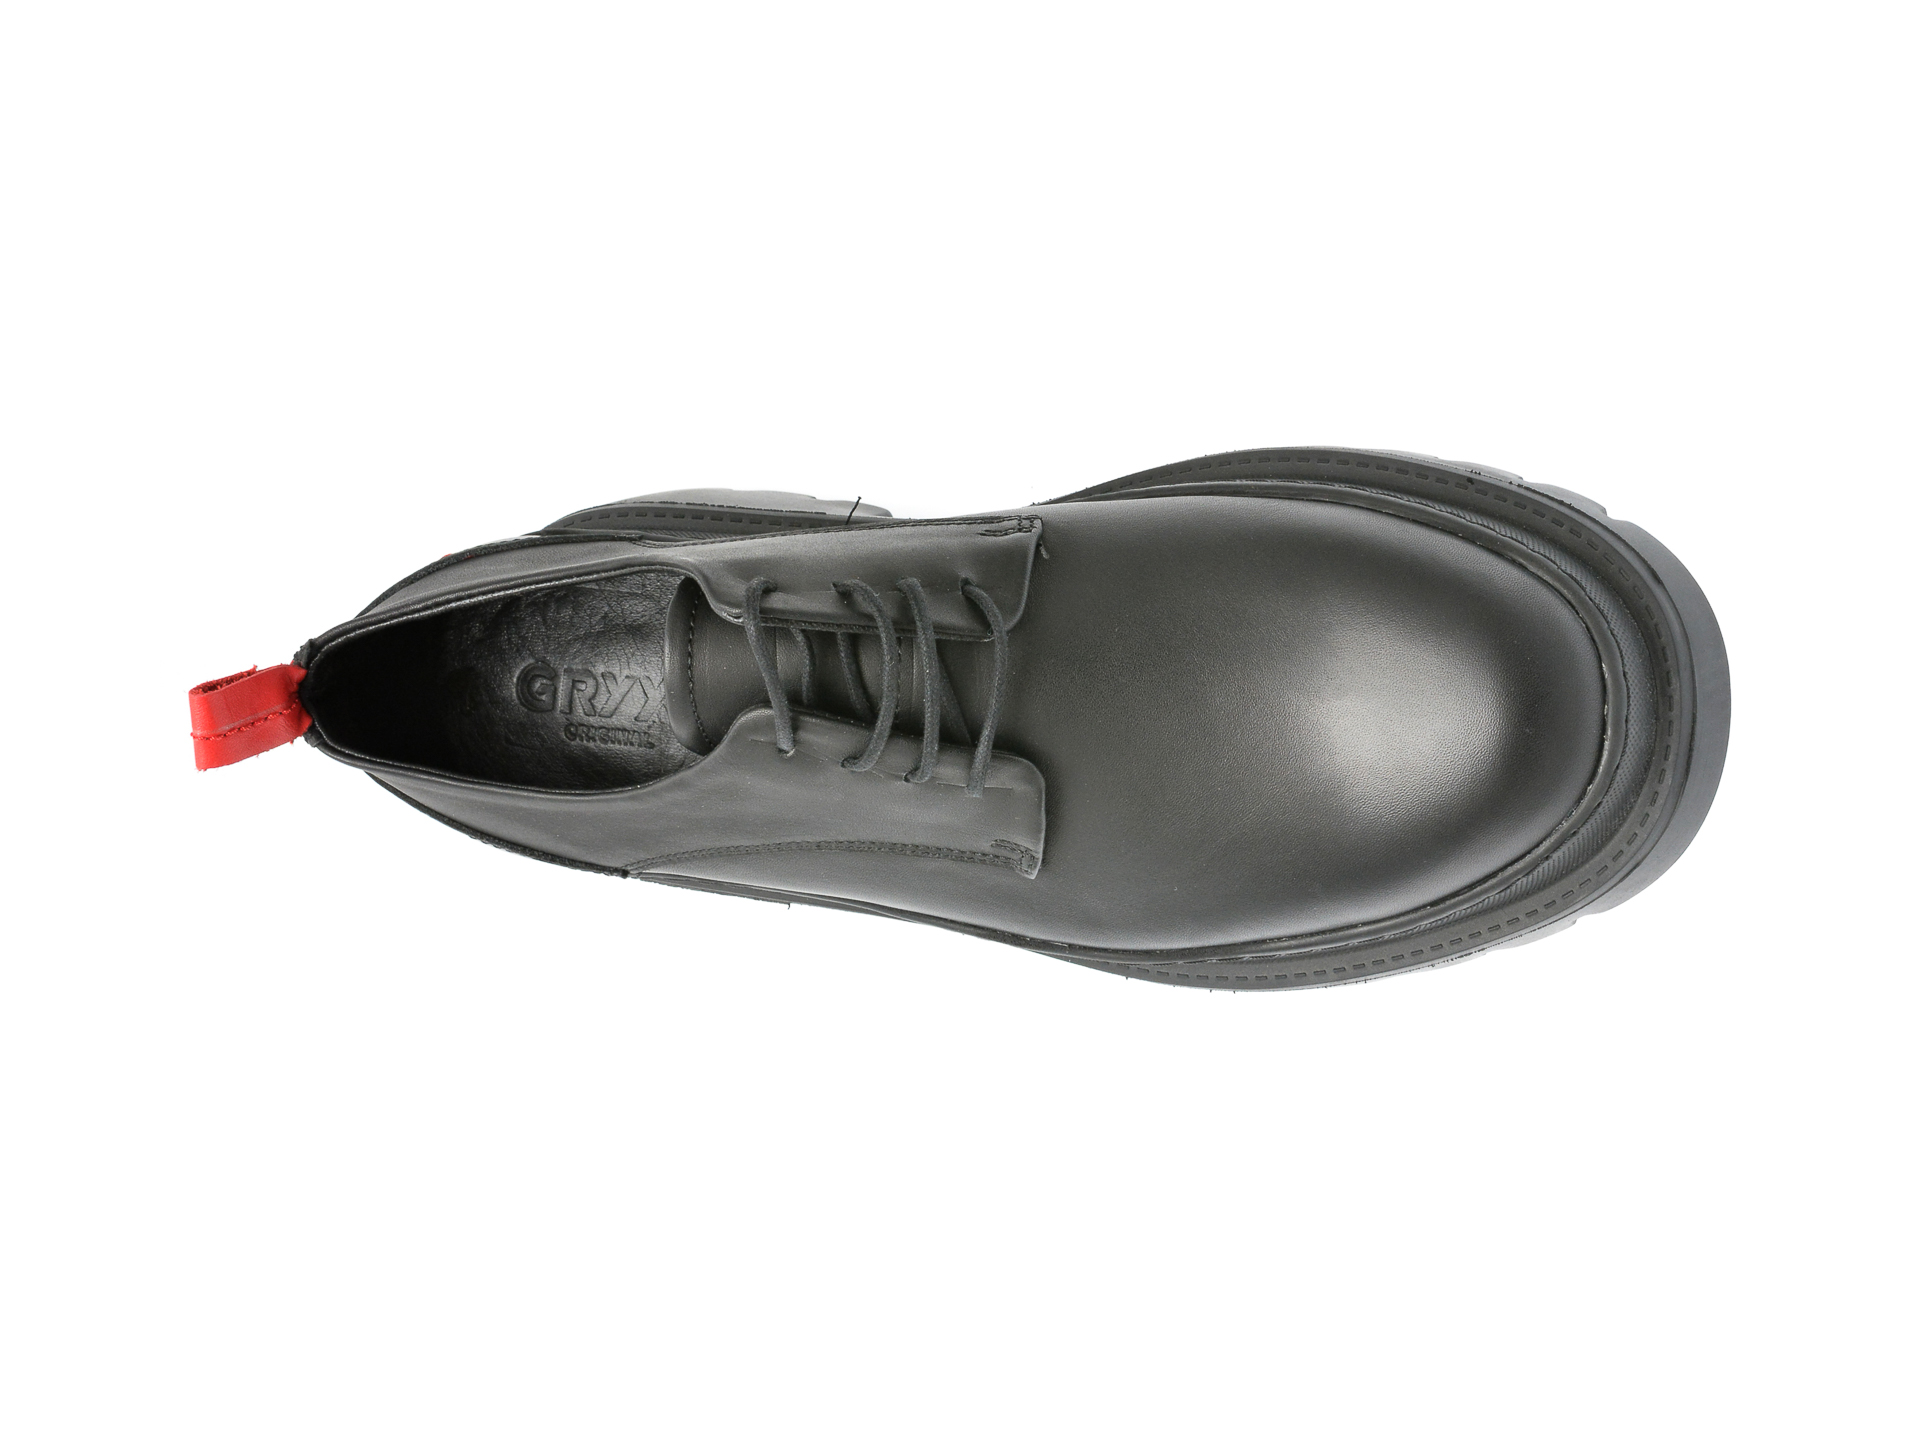 Poze Pantofi GRYXX negri, M7008, din piele naturala